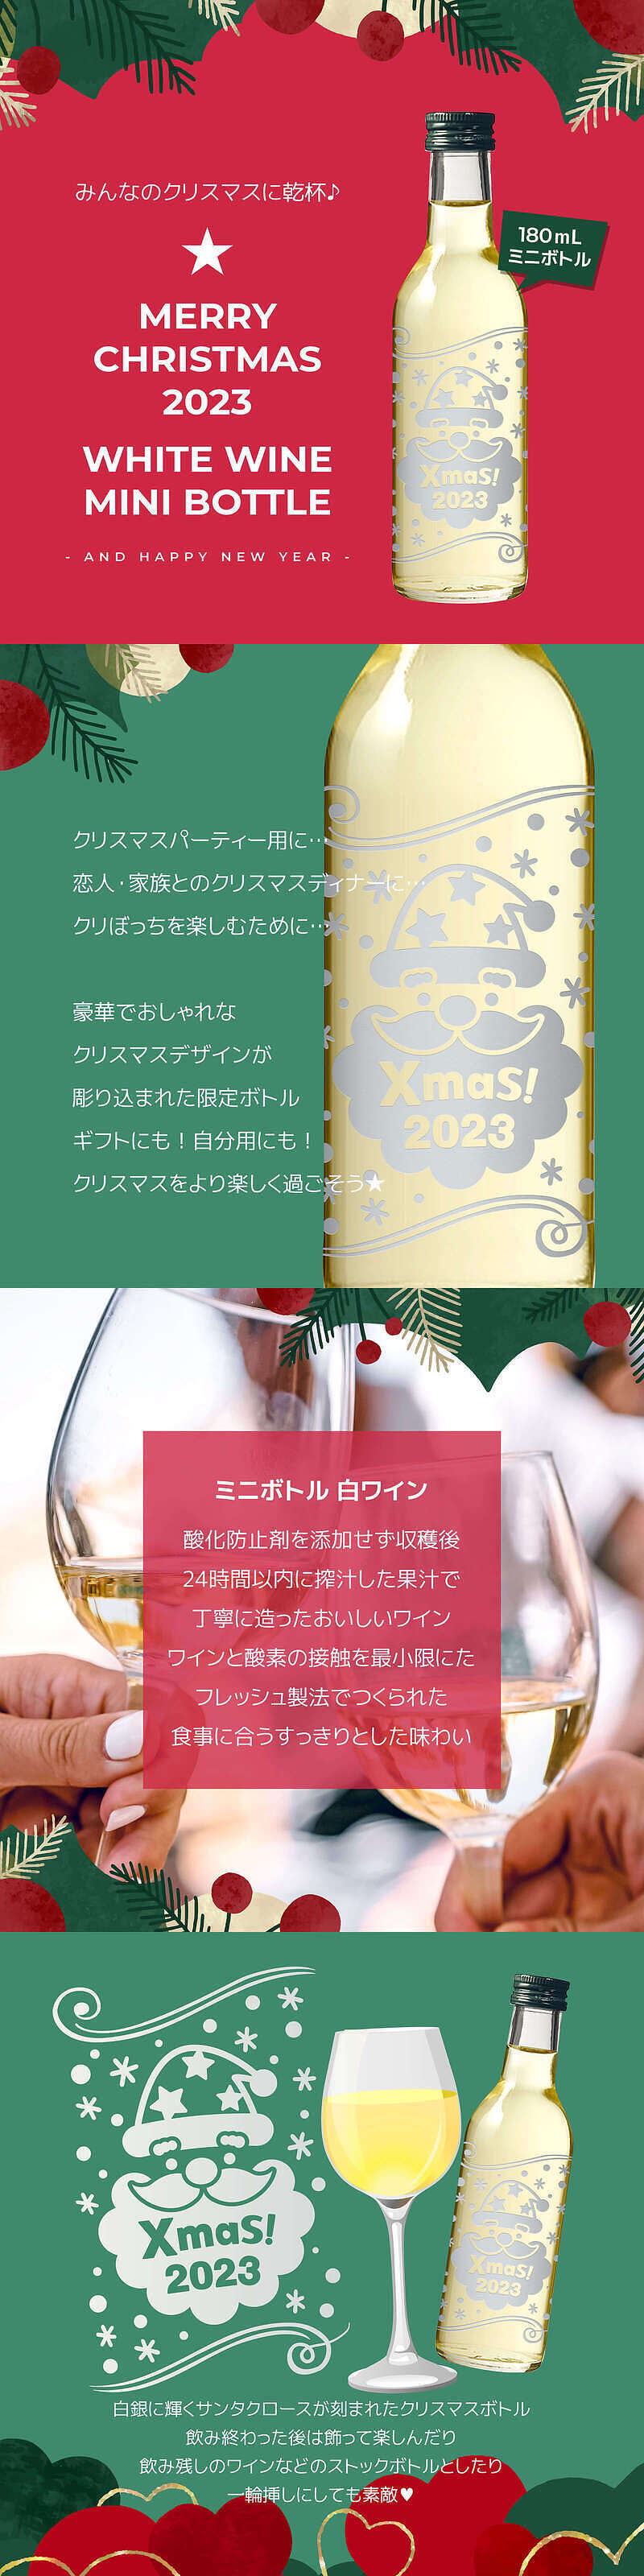 クリスマスサンタボトル 白ワインの説明